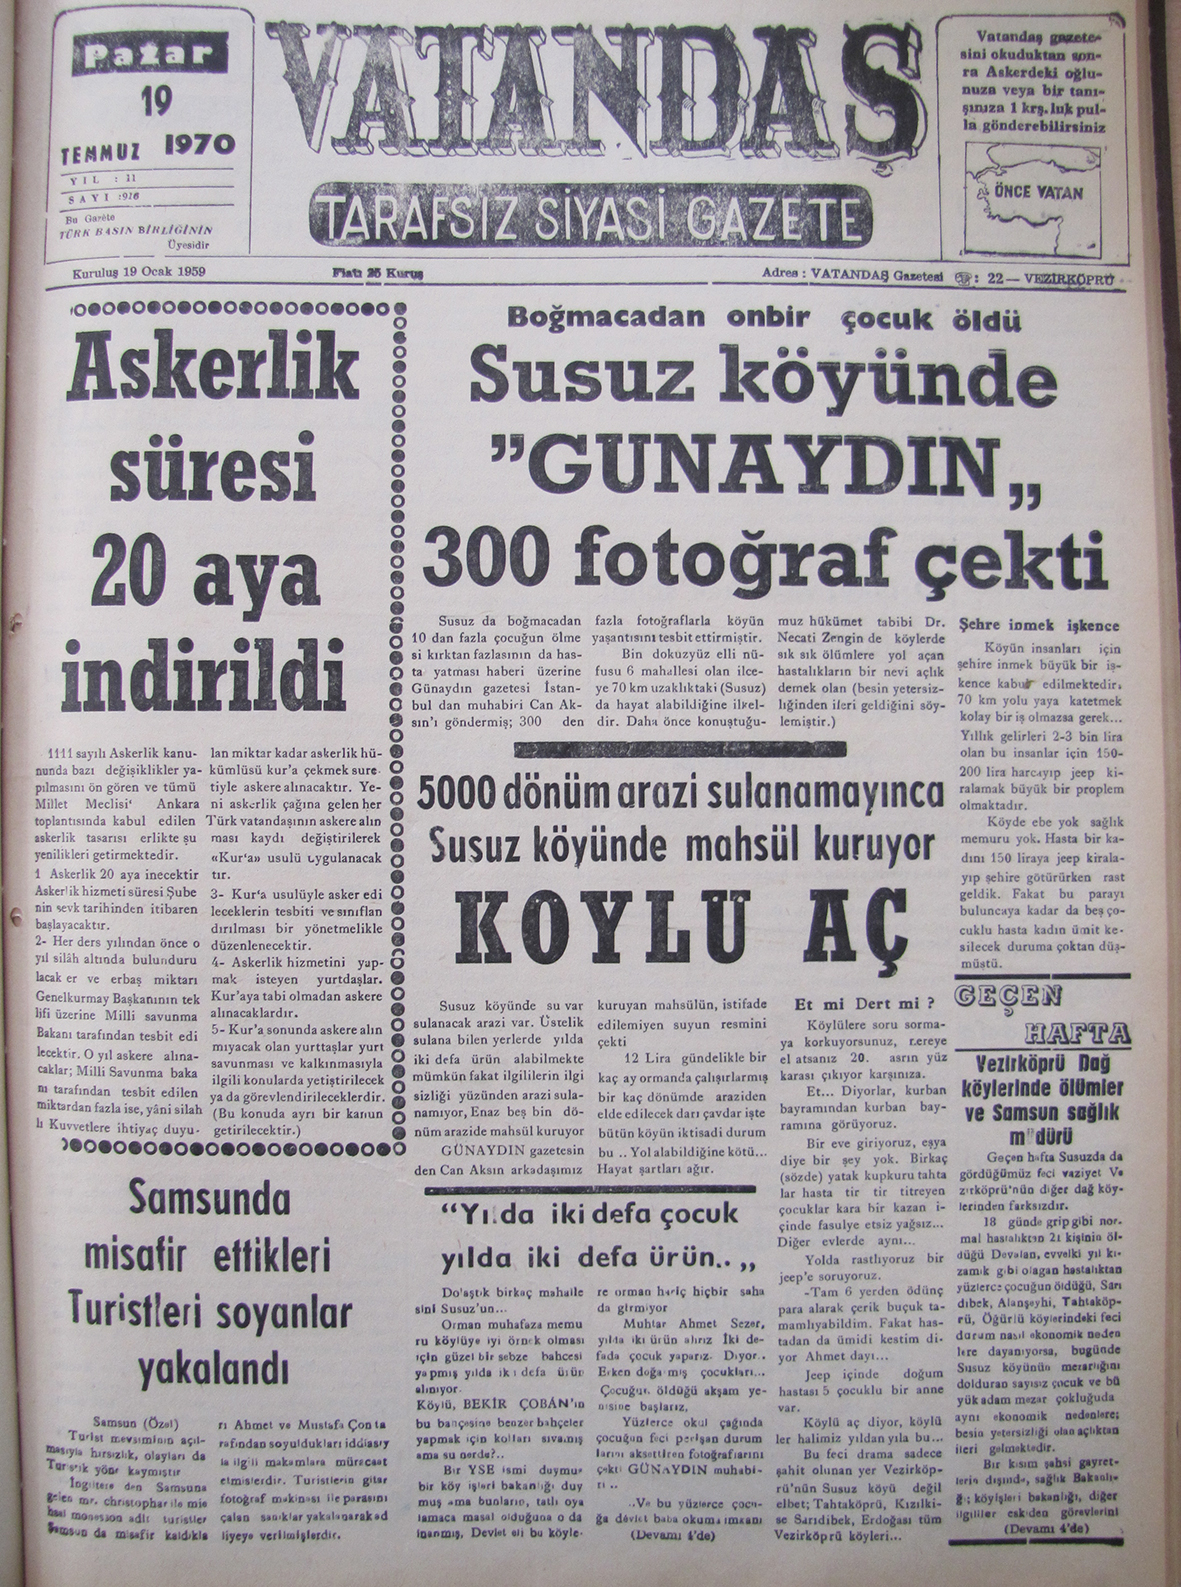 Boğmacadan onbir çocuk öldü Susuz Köyünde “Günaydın” 300 Fotoğraf Çekti 19 Temmuz 1970 Pazar